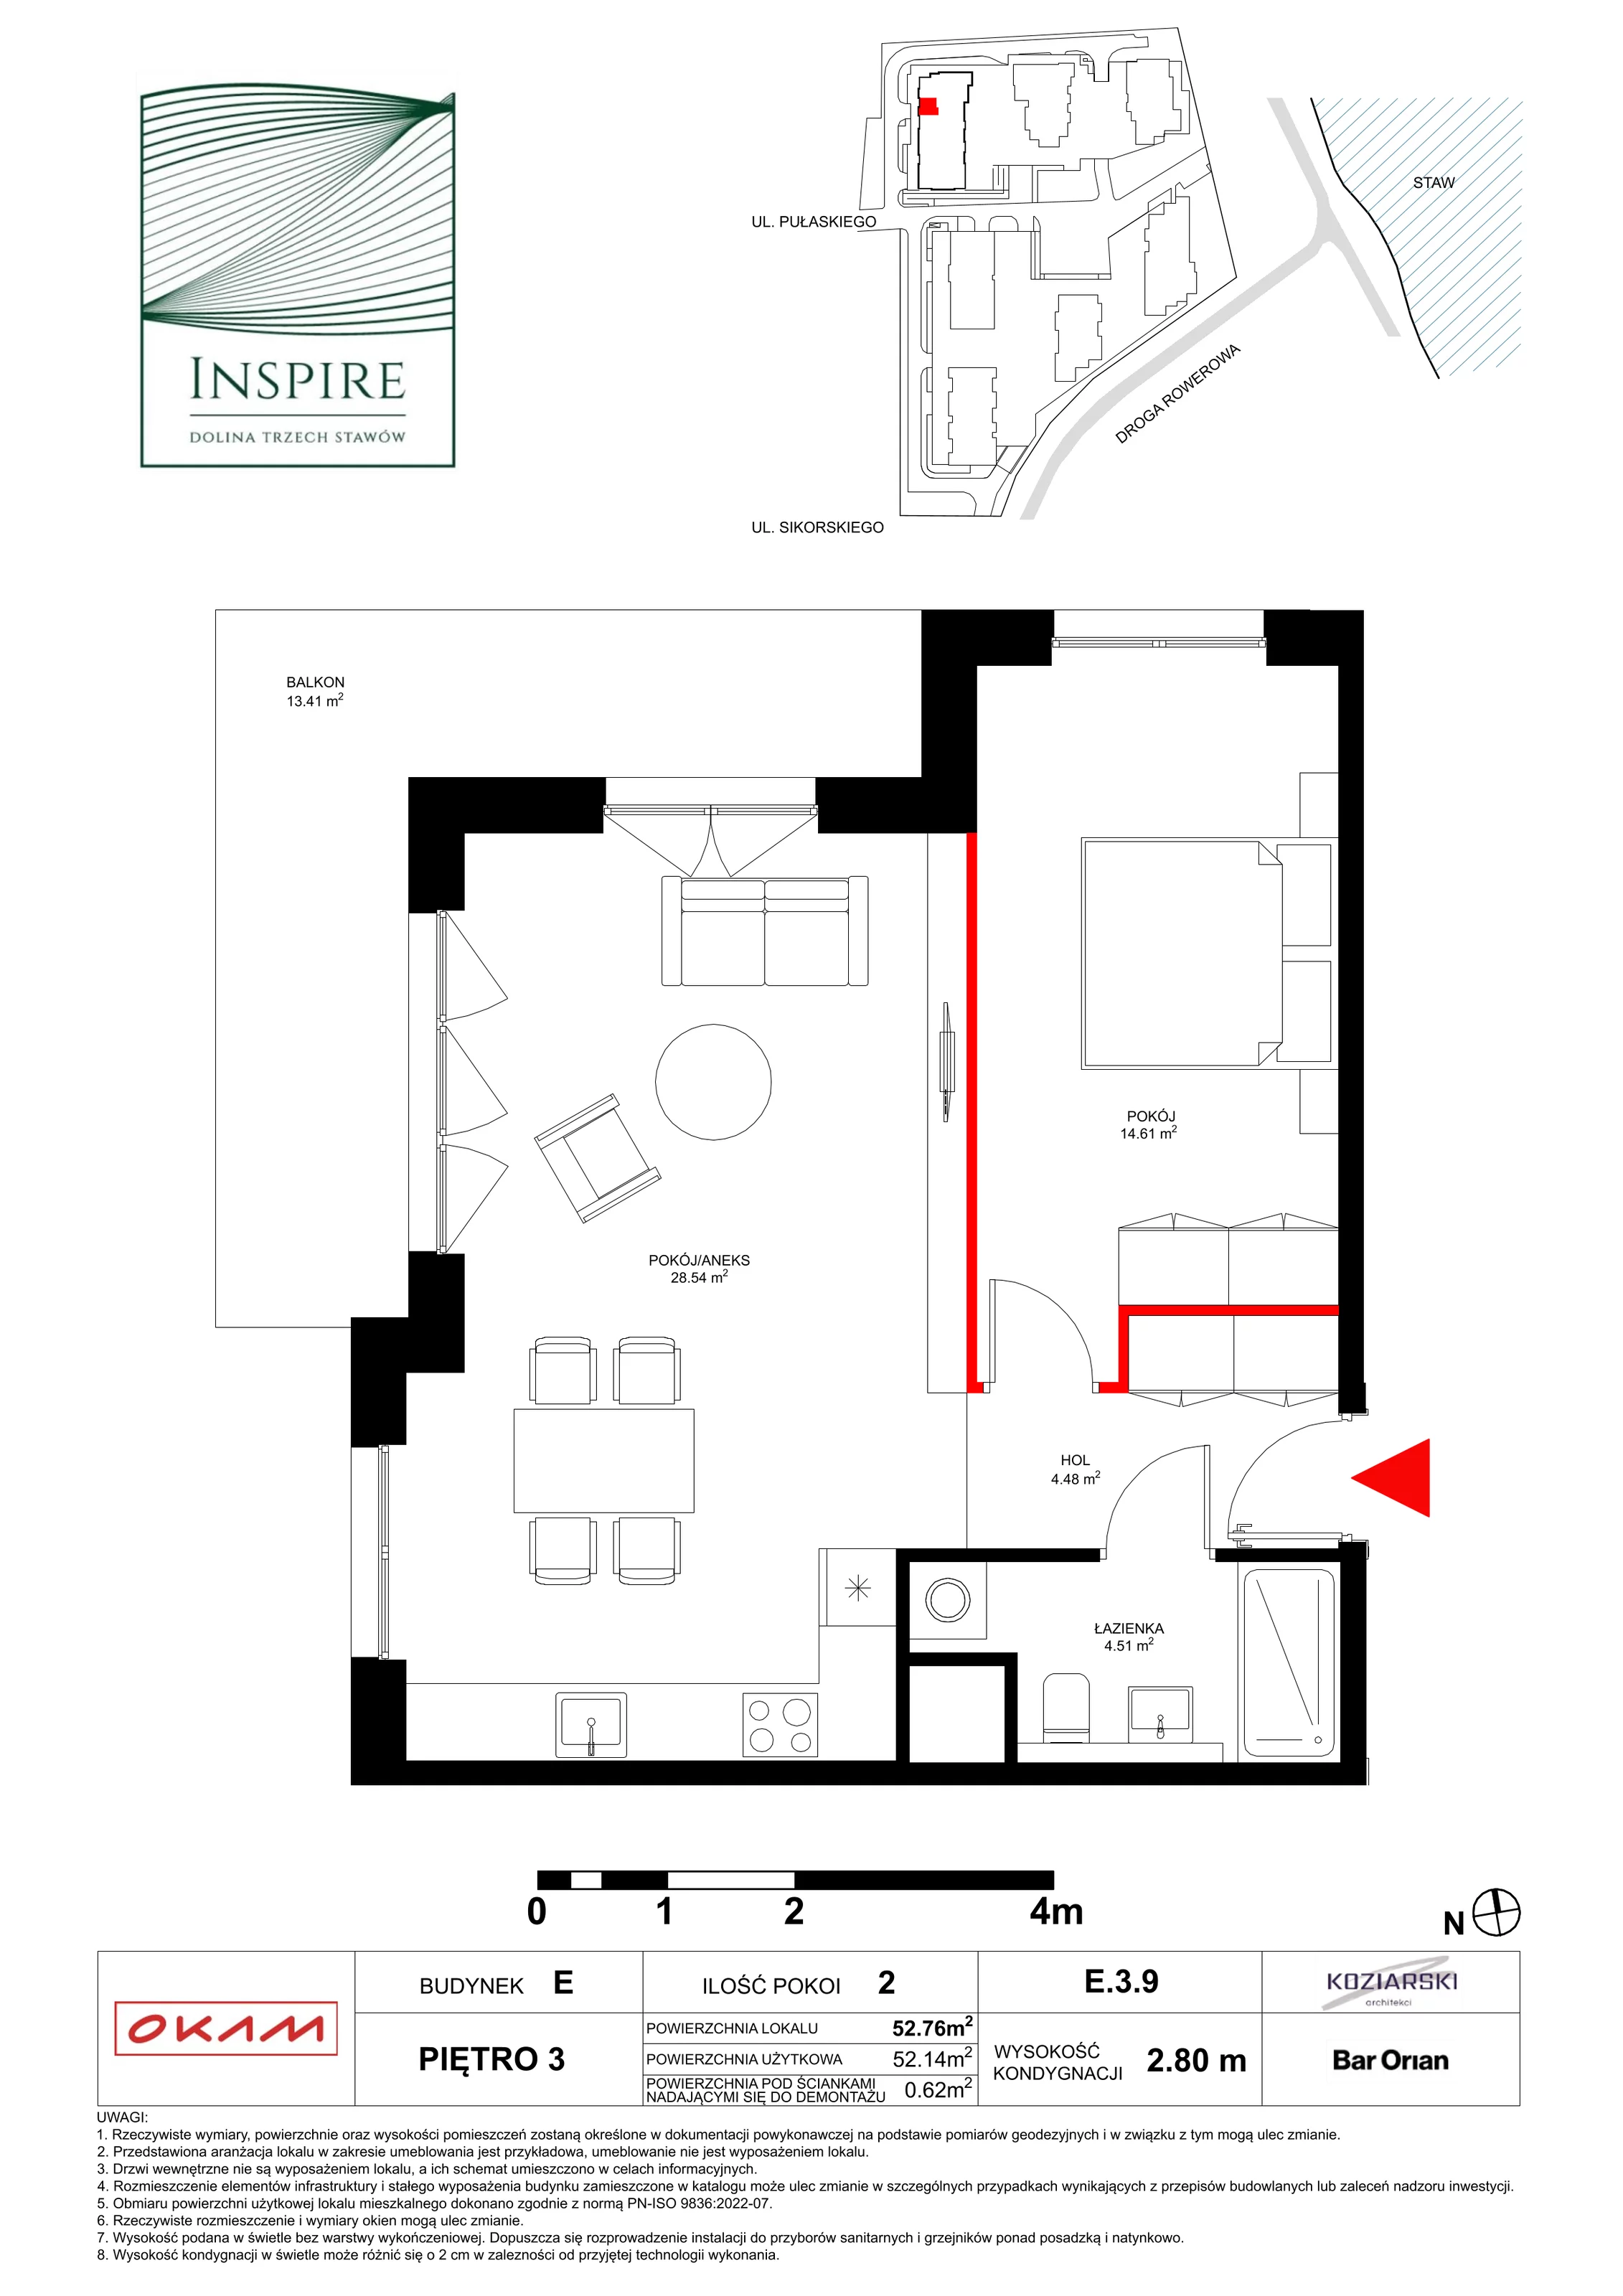 Apartament 52,14 m², piętro 3, oferta nr E.3.9, Inspire, Katowice, Osiedle Paderewskiego-Muchowiec, Dolina Trzech Stawów, ul. gen. Sikorskiego 41